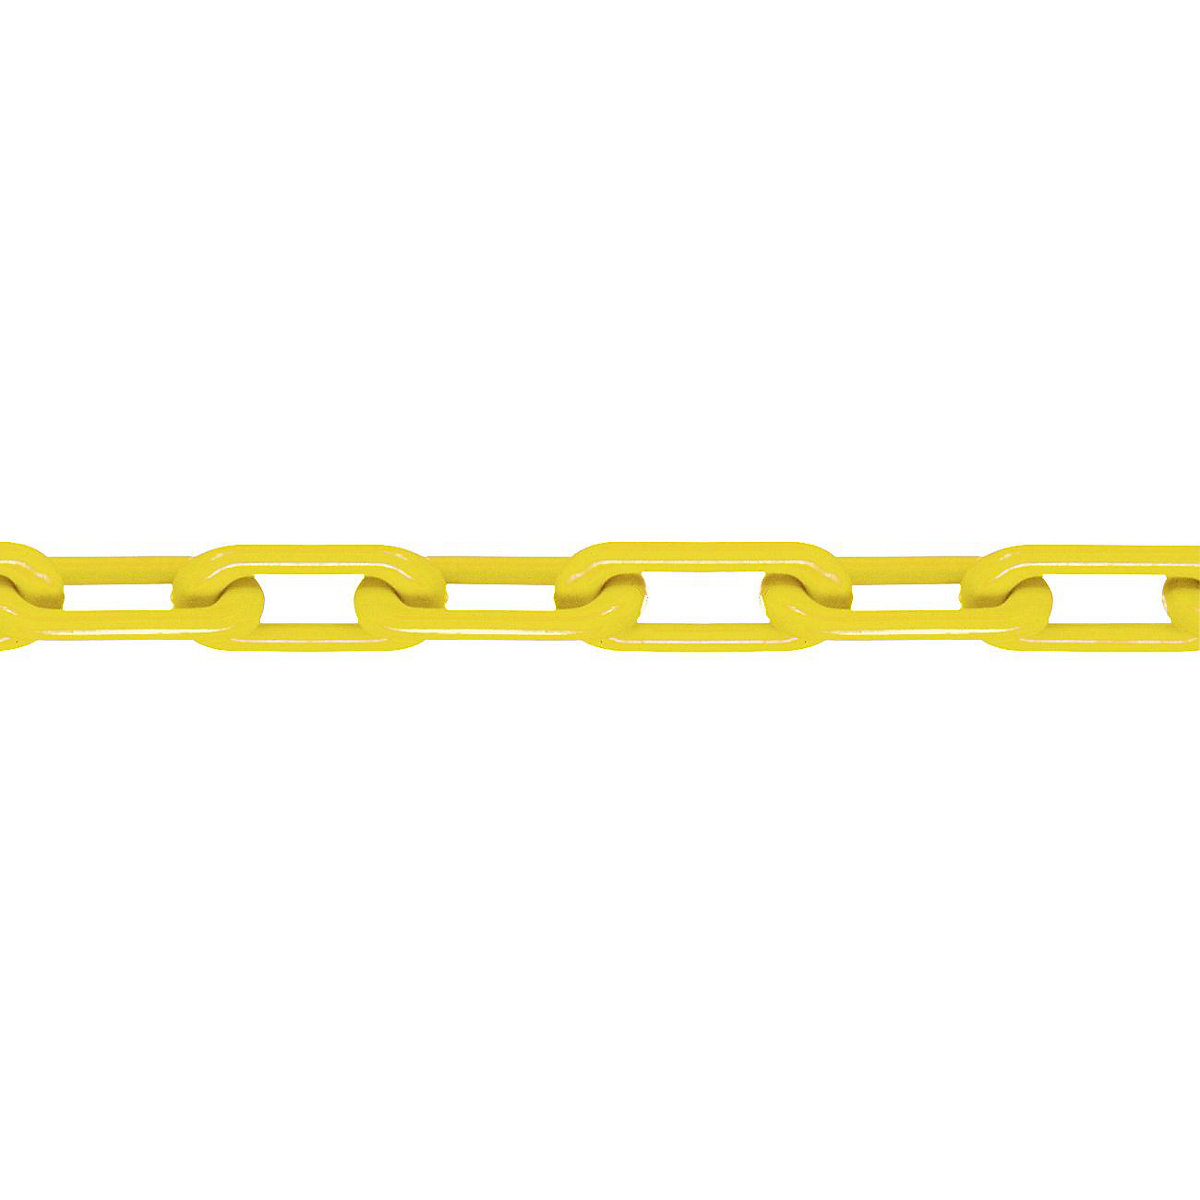 Łańcuch z nylonu, jakość MNK 8, dł. wiązki 25 m, żółty, od 4 szt.-3